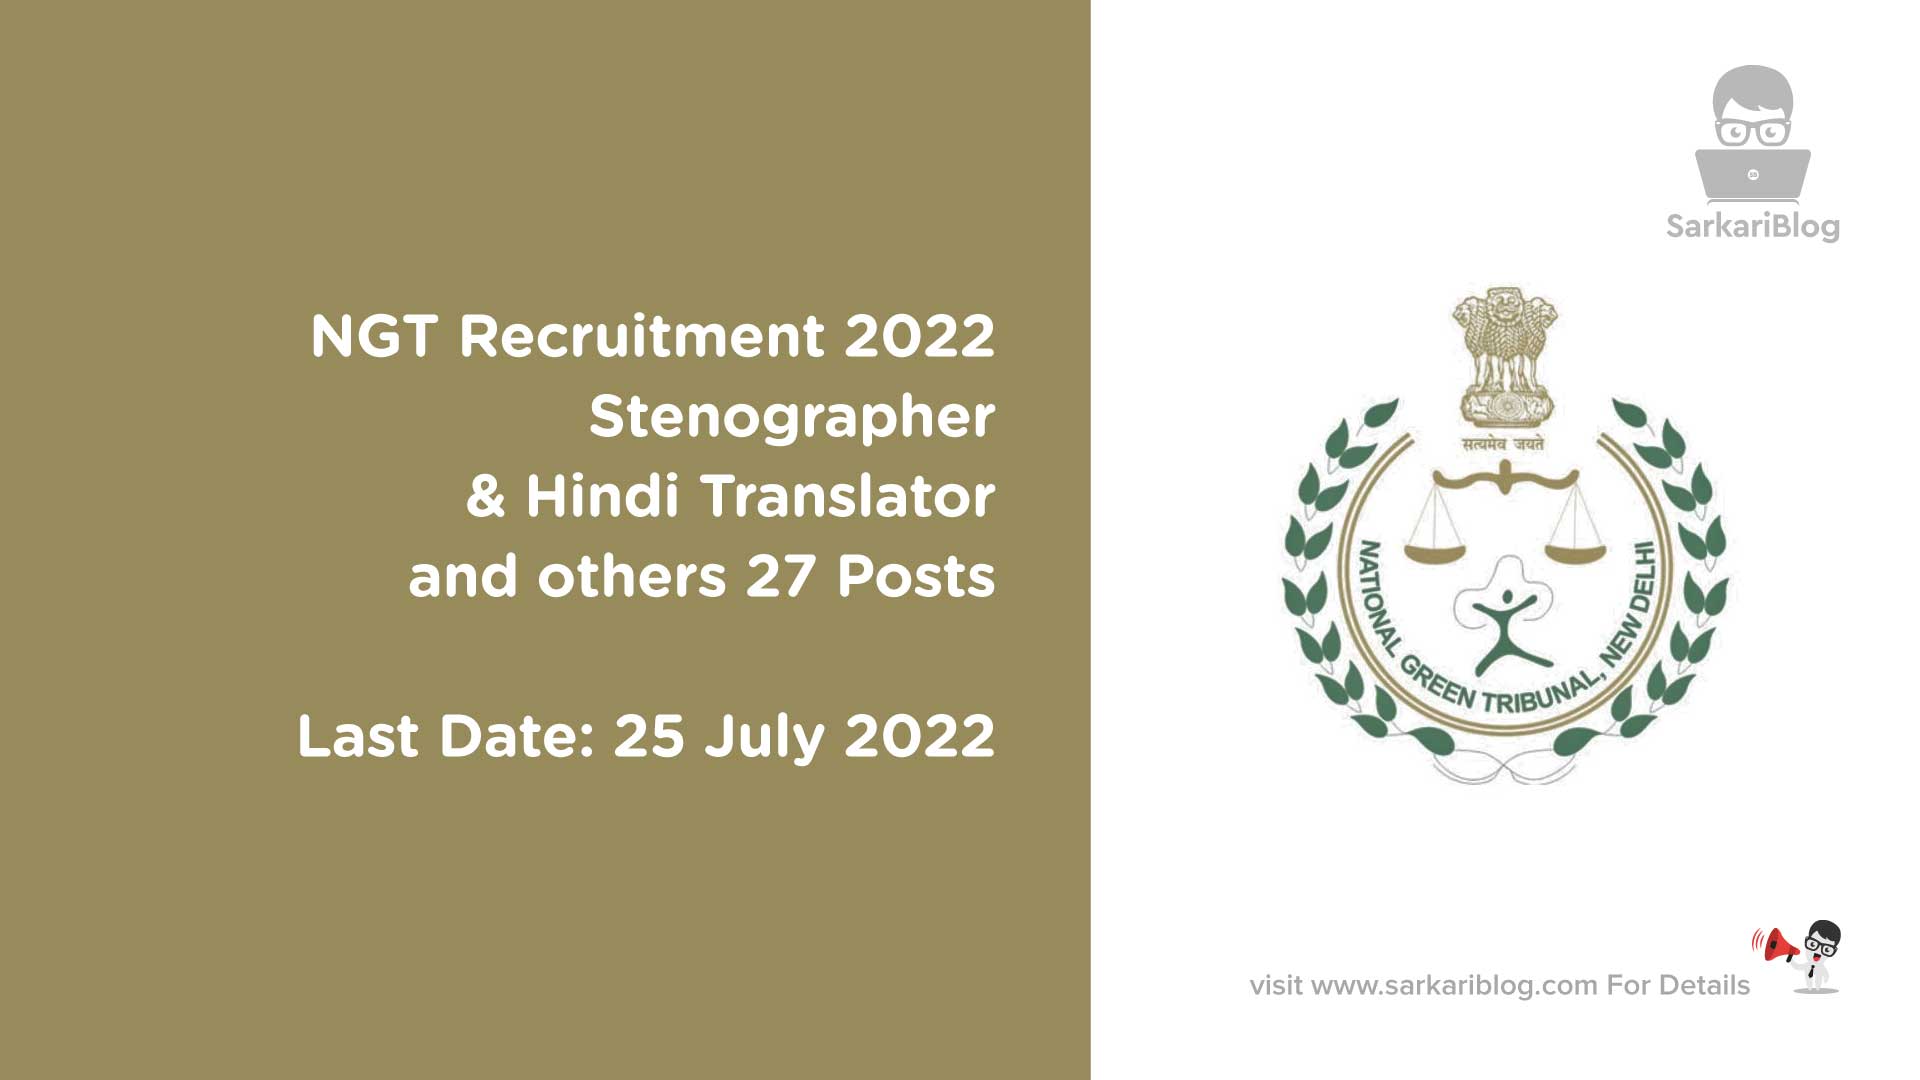 NGT Recruitment 2022